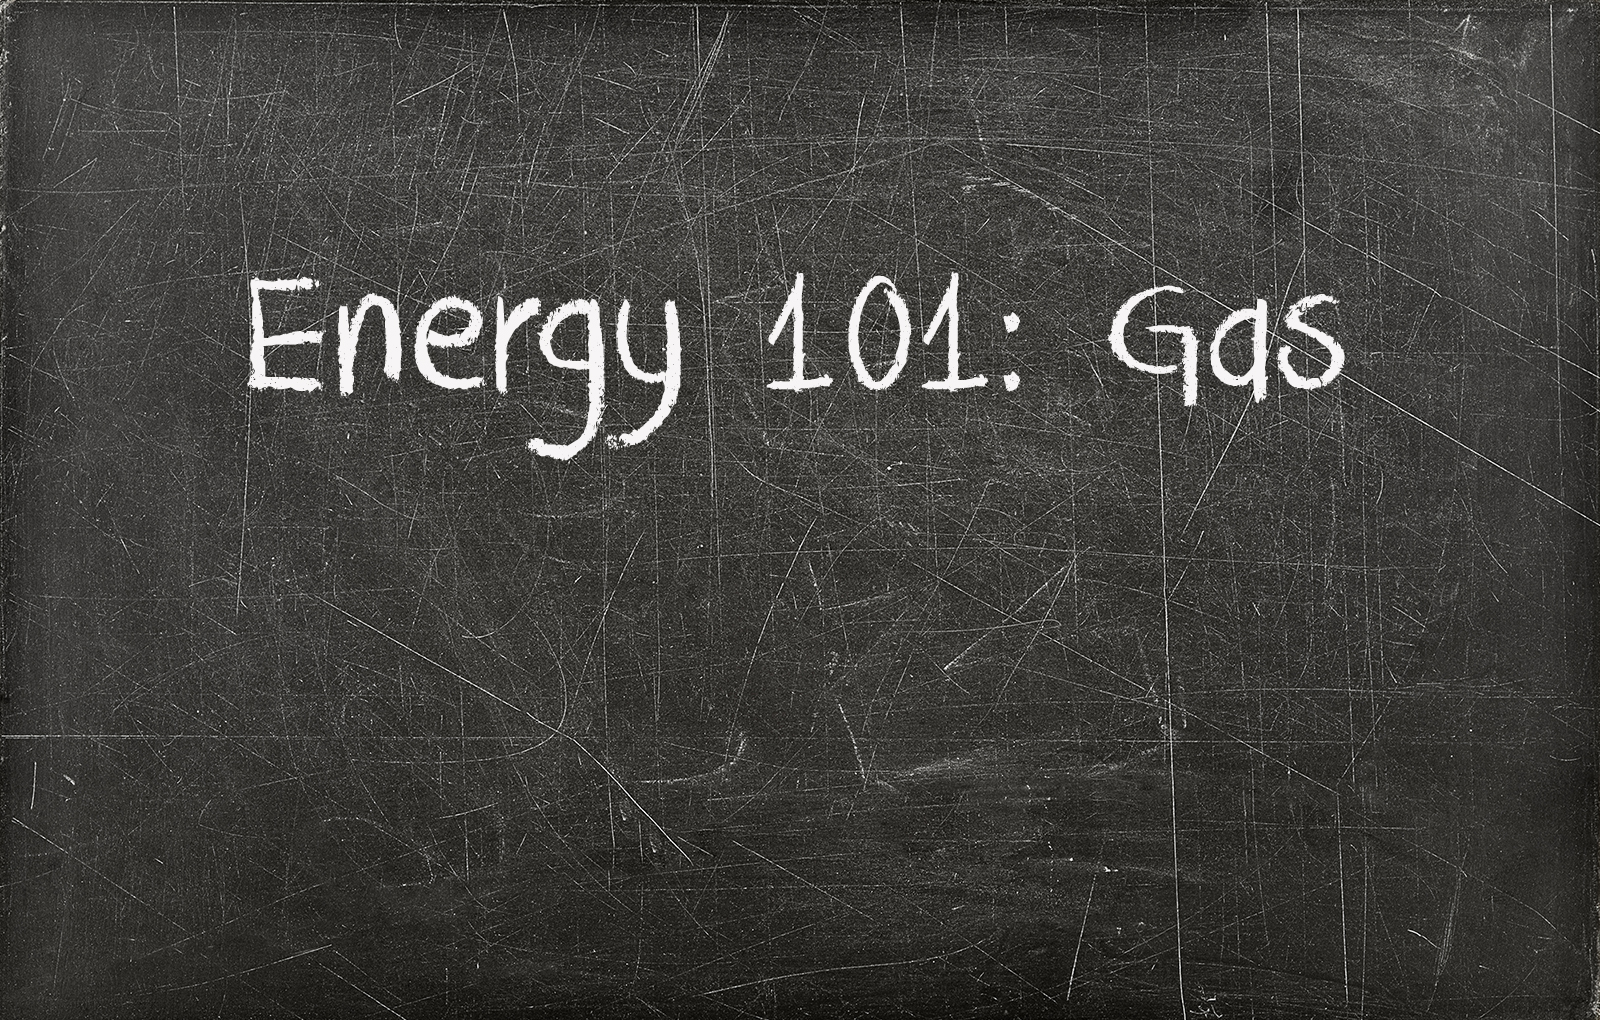 Chalkboard with writing saying Energy 101 Gas on it